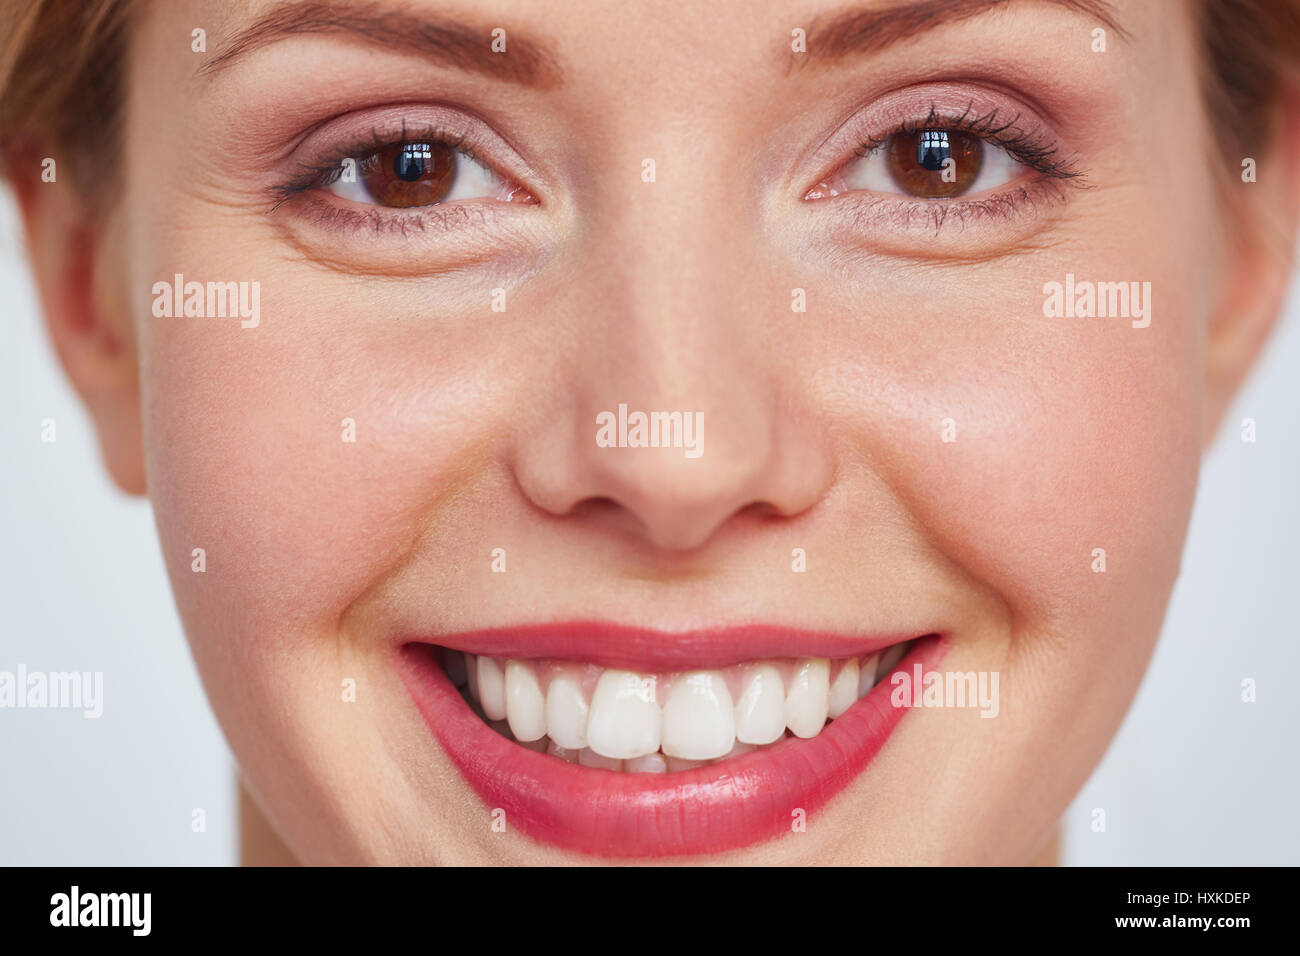 Portrait of smiling woman Banque D'Images